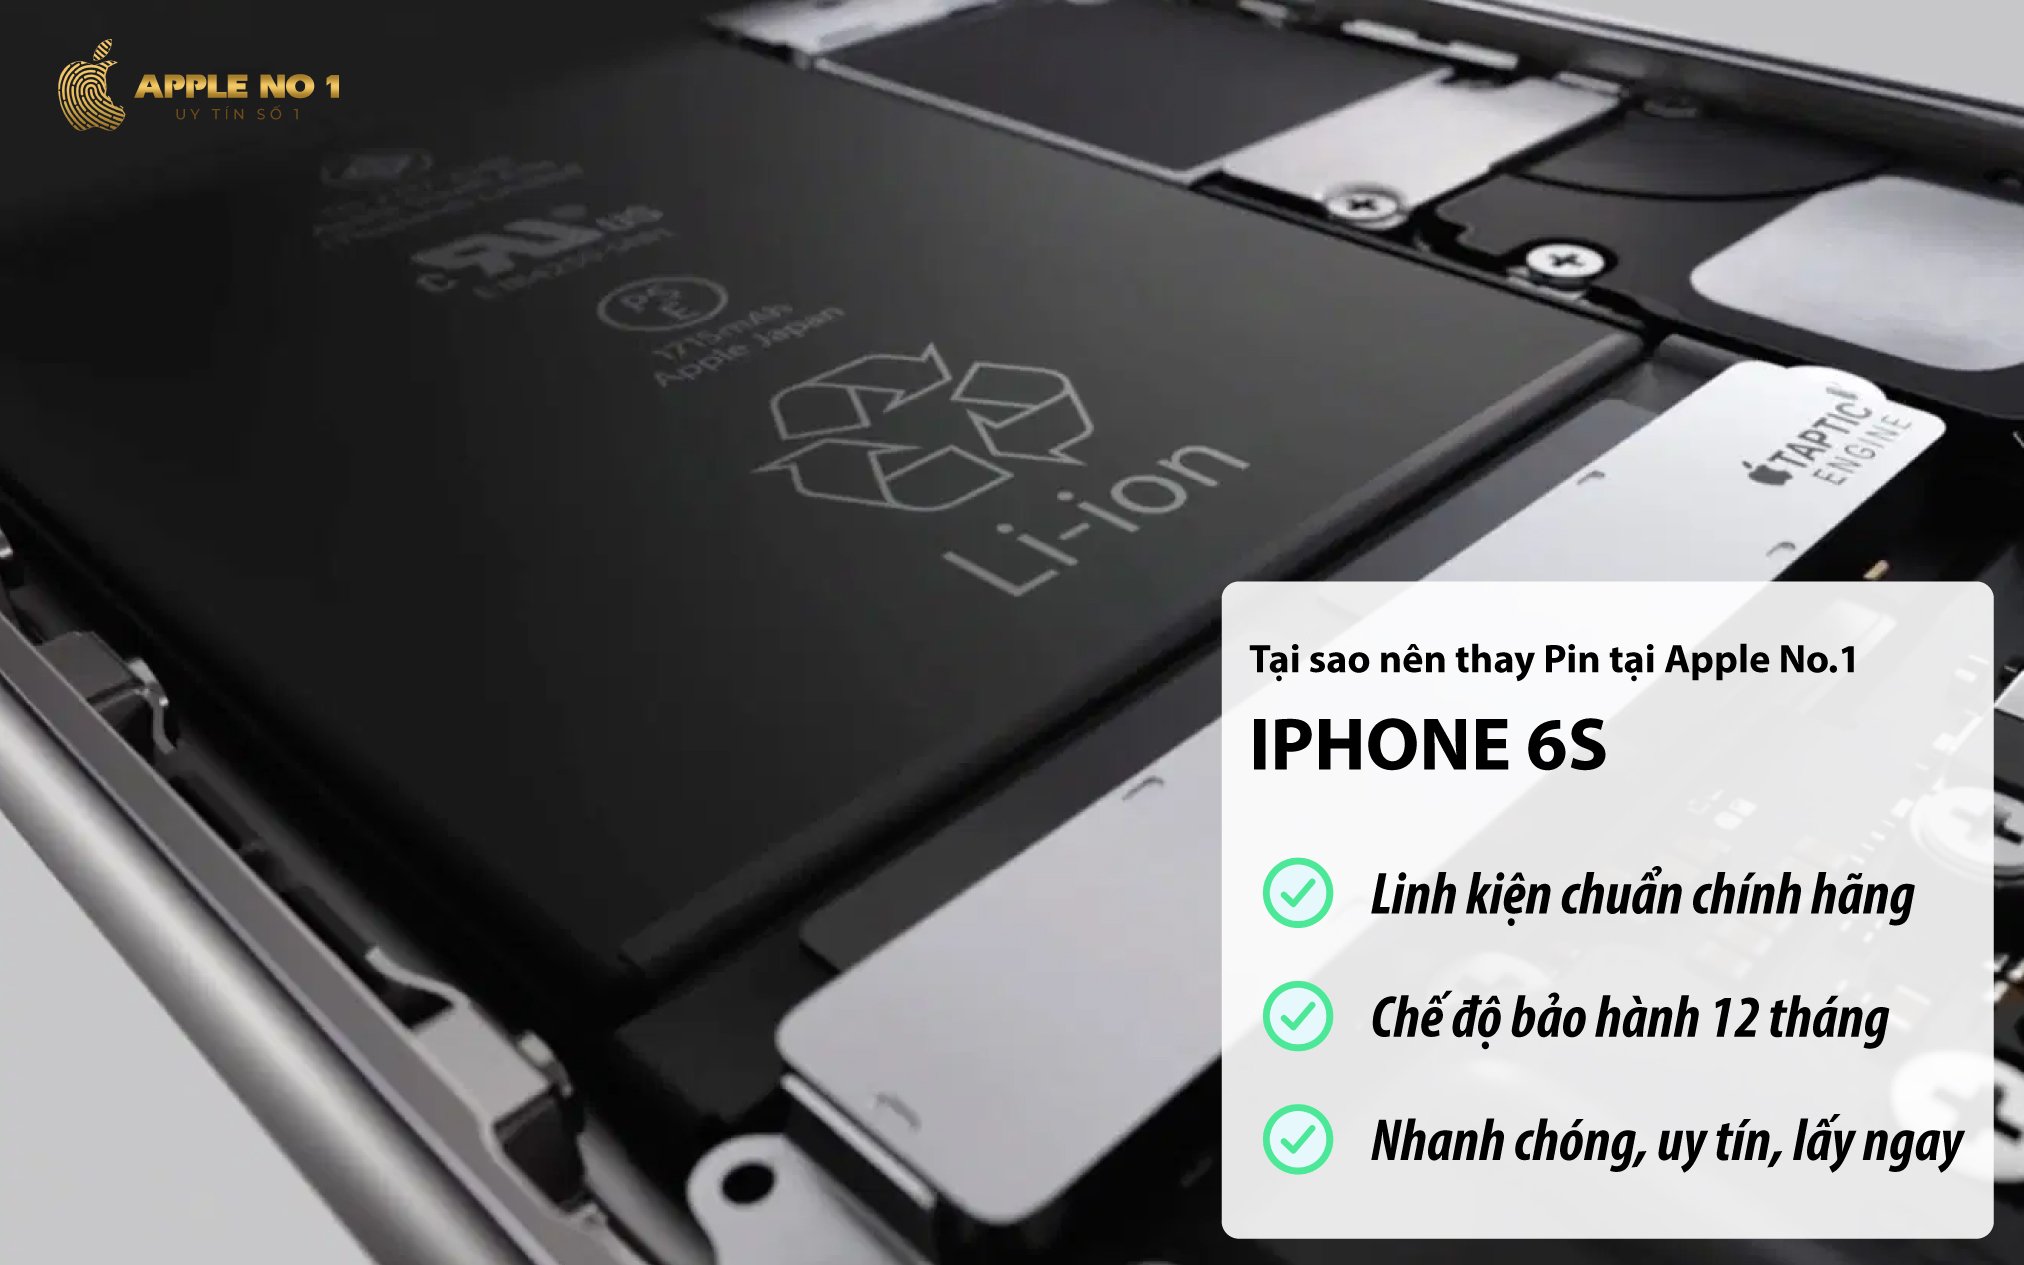 Thay pin iPhone 6S dung lượng chuẩn chính hãng tại Apple No.1